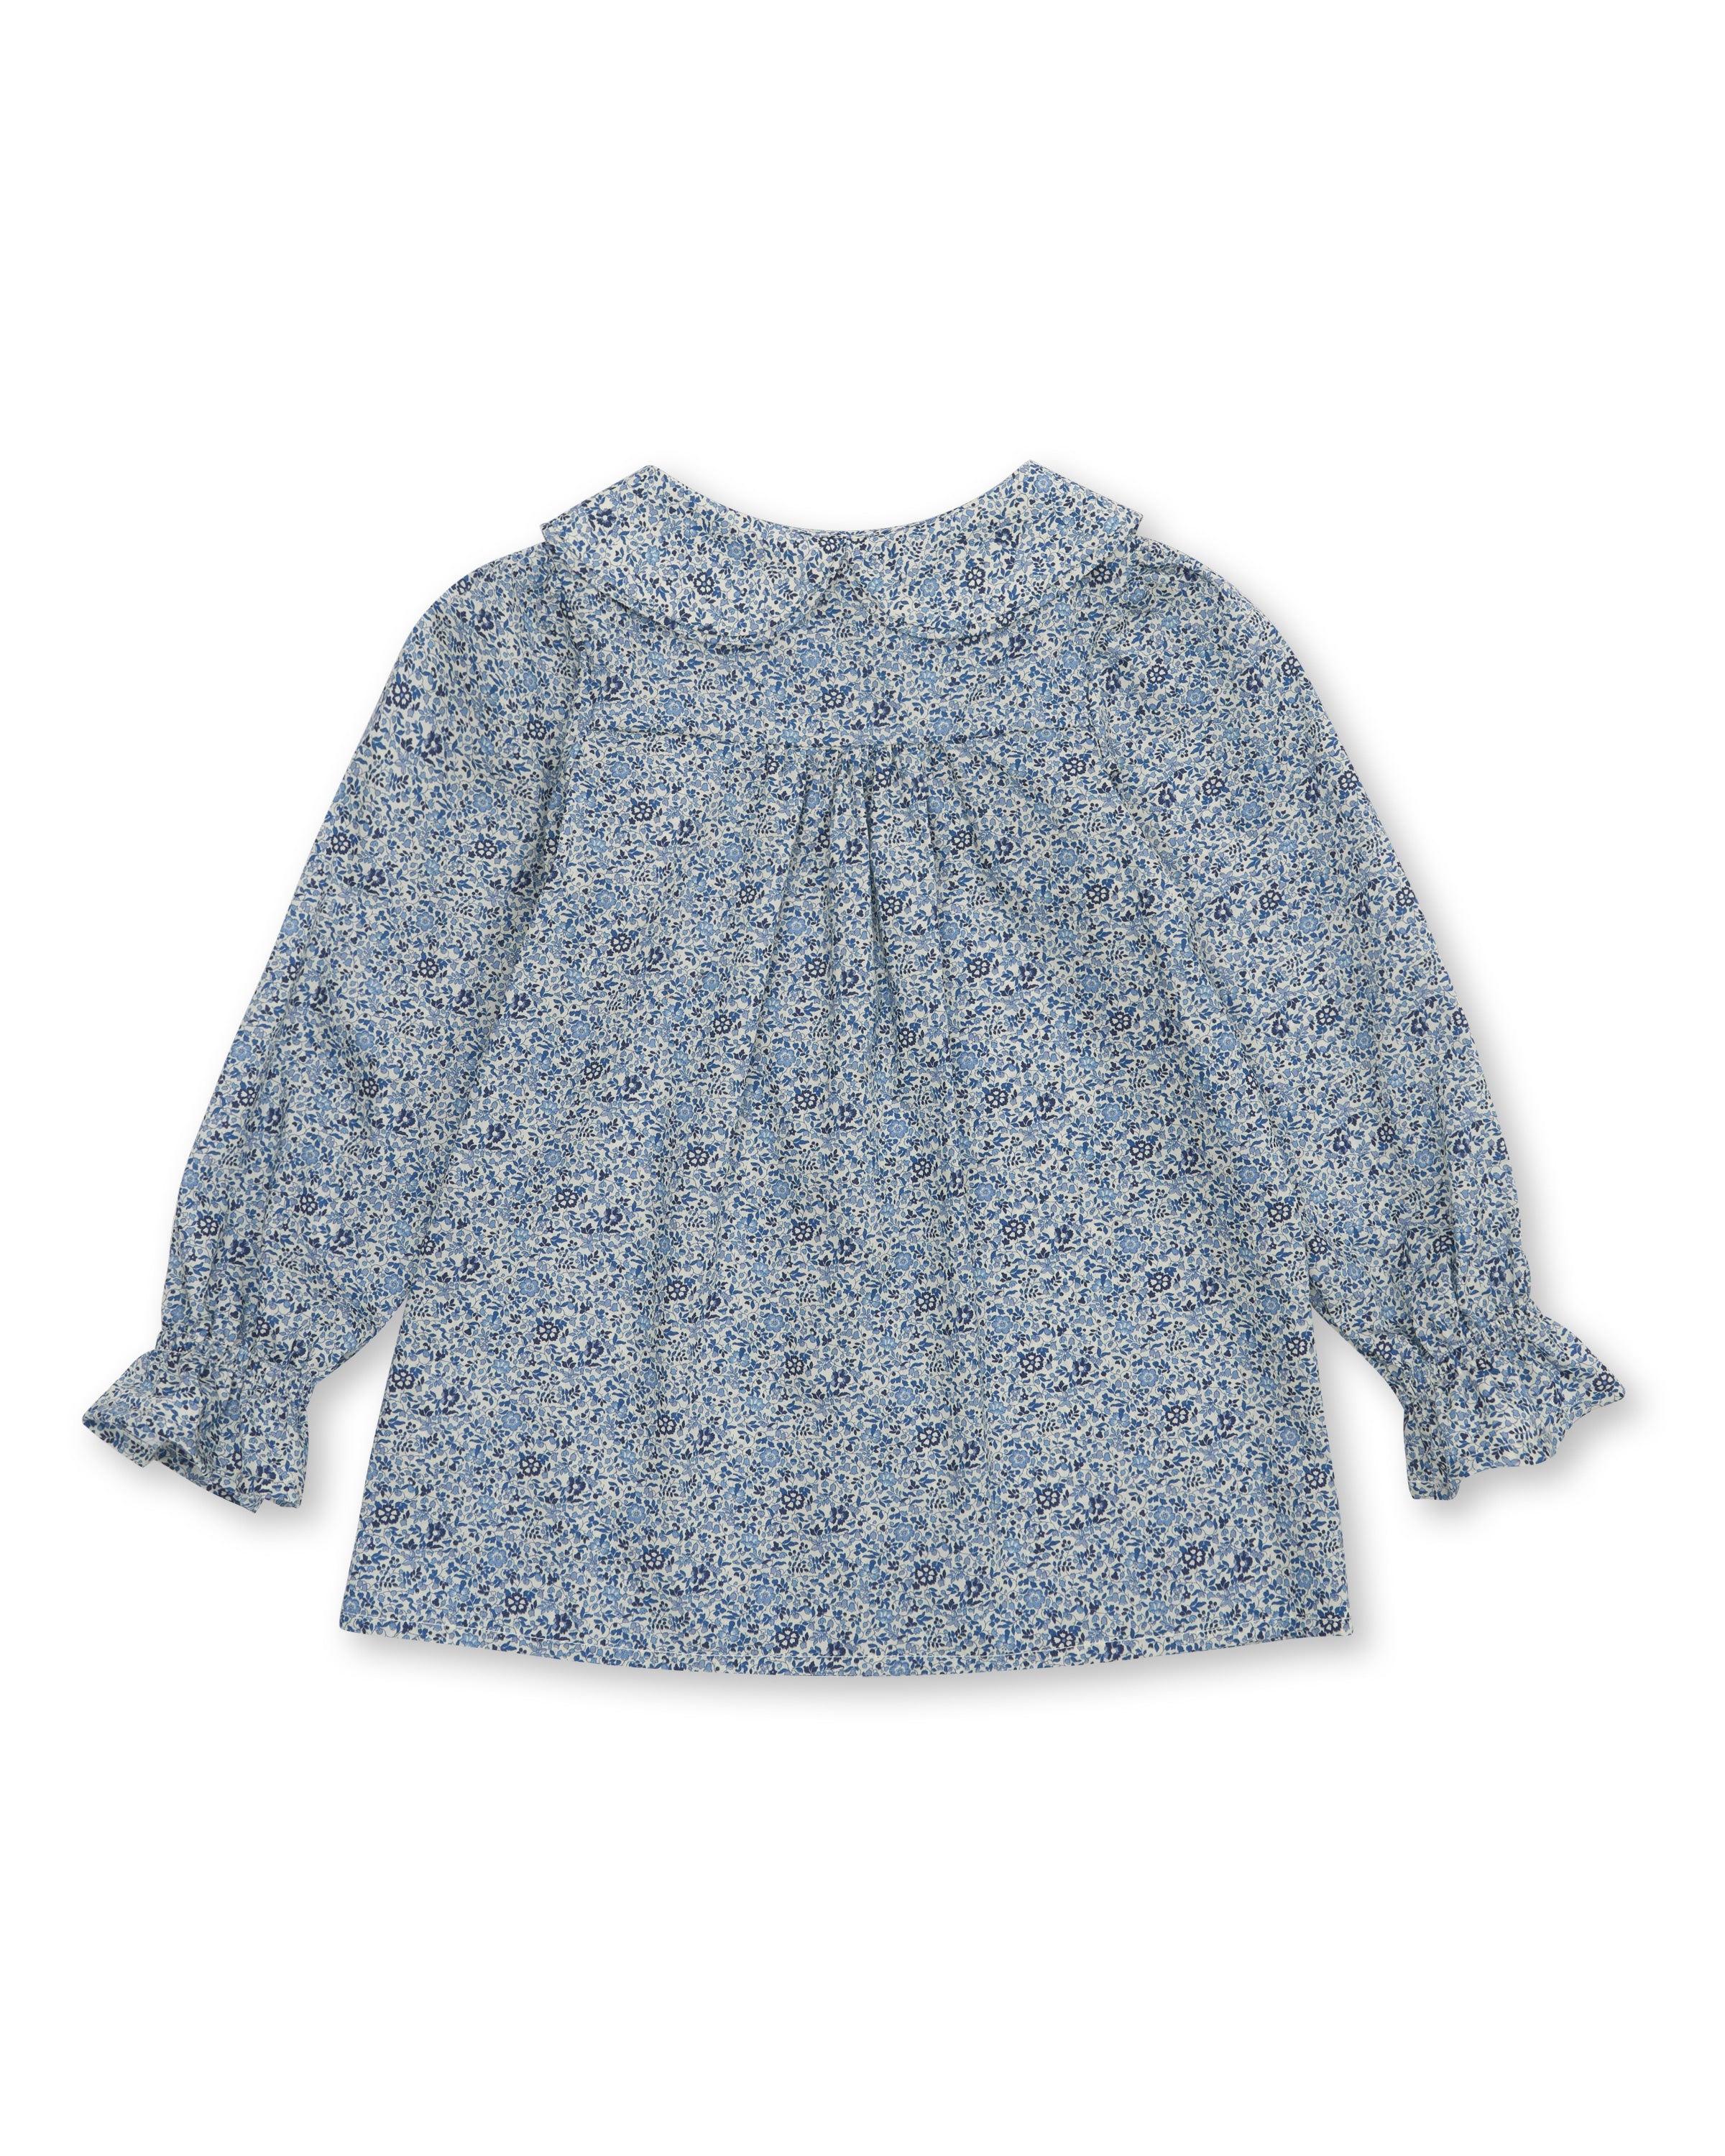 Girls' Designer Shirt, Blue Floral, ages 1 to 6.